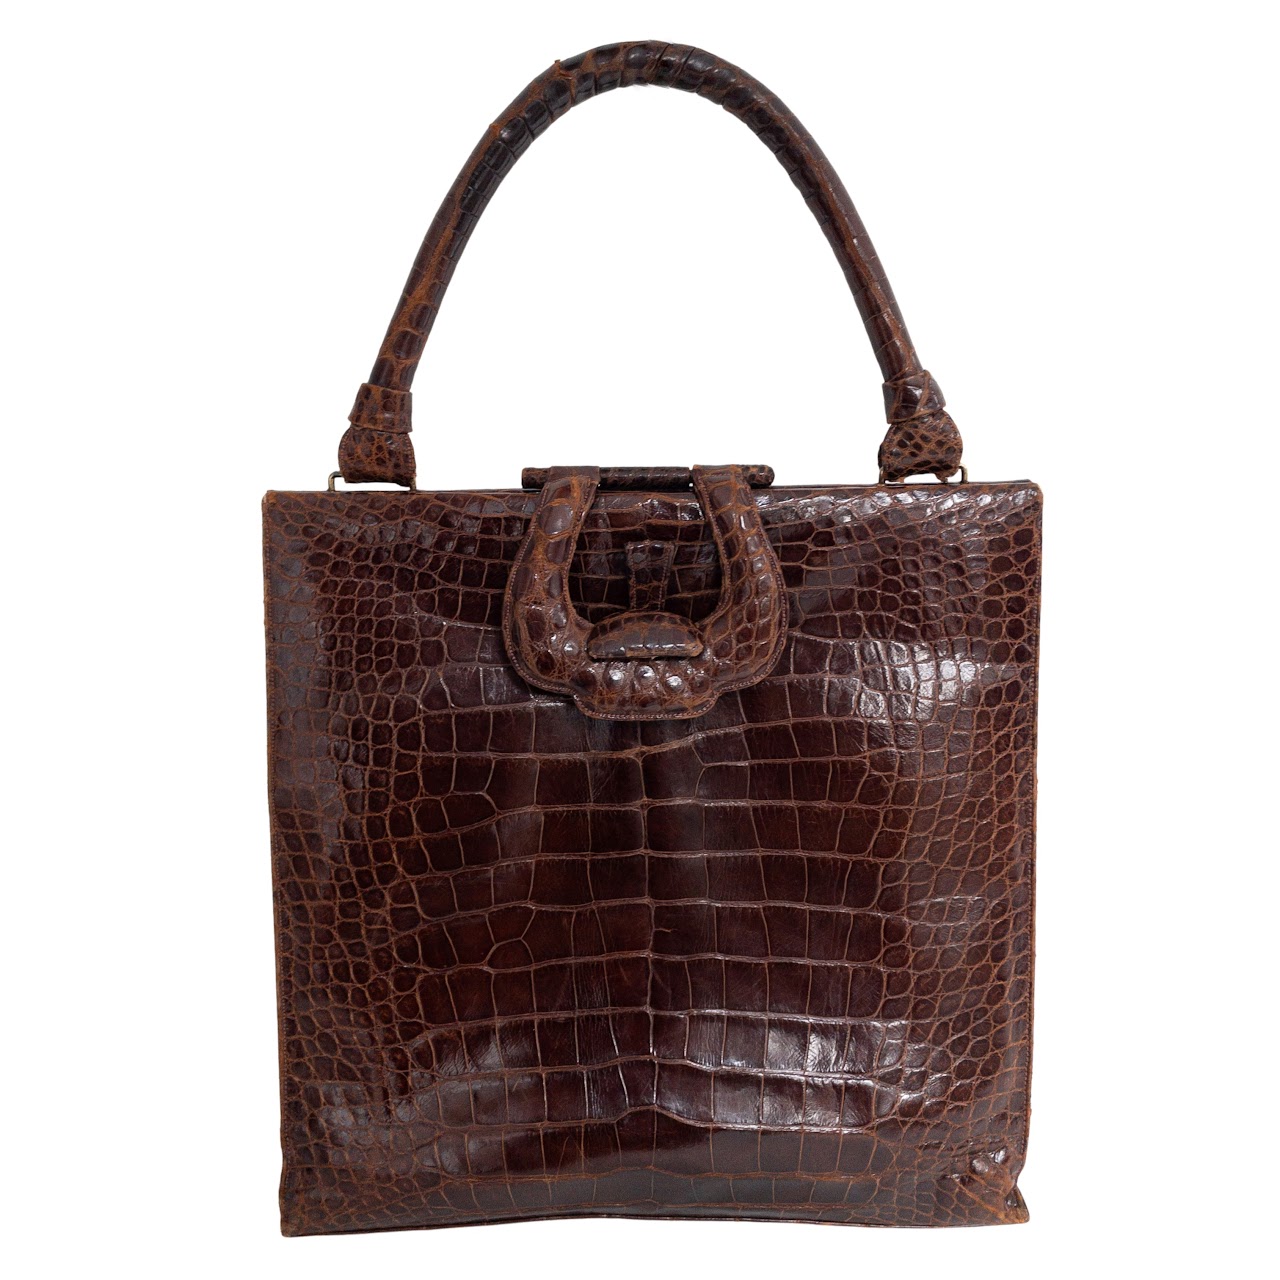 Lucille de Paris Alligator Handbag